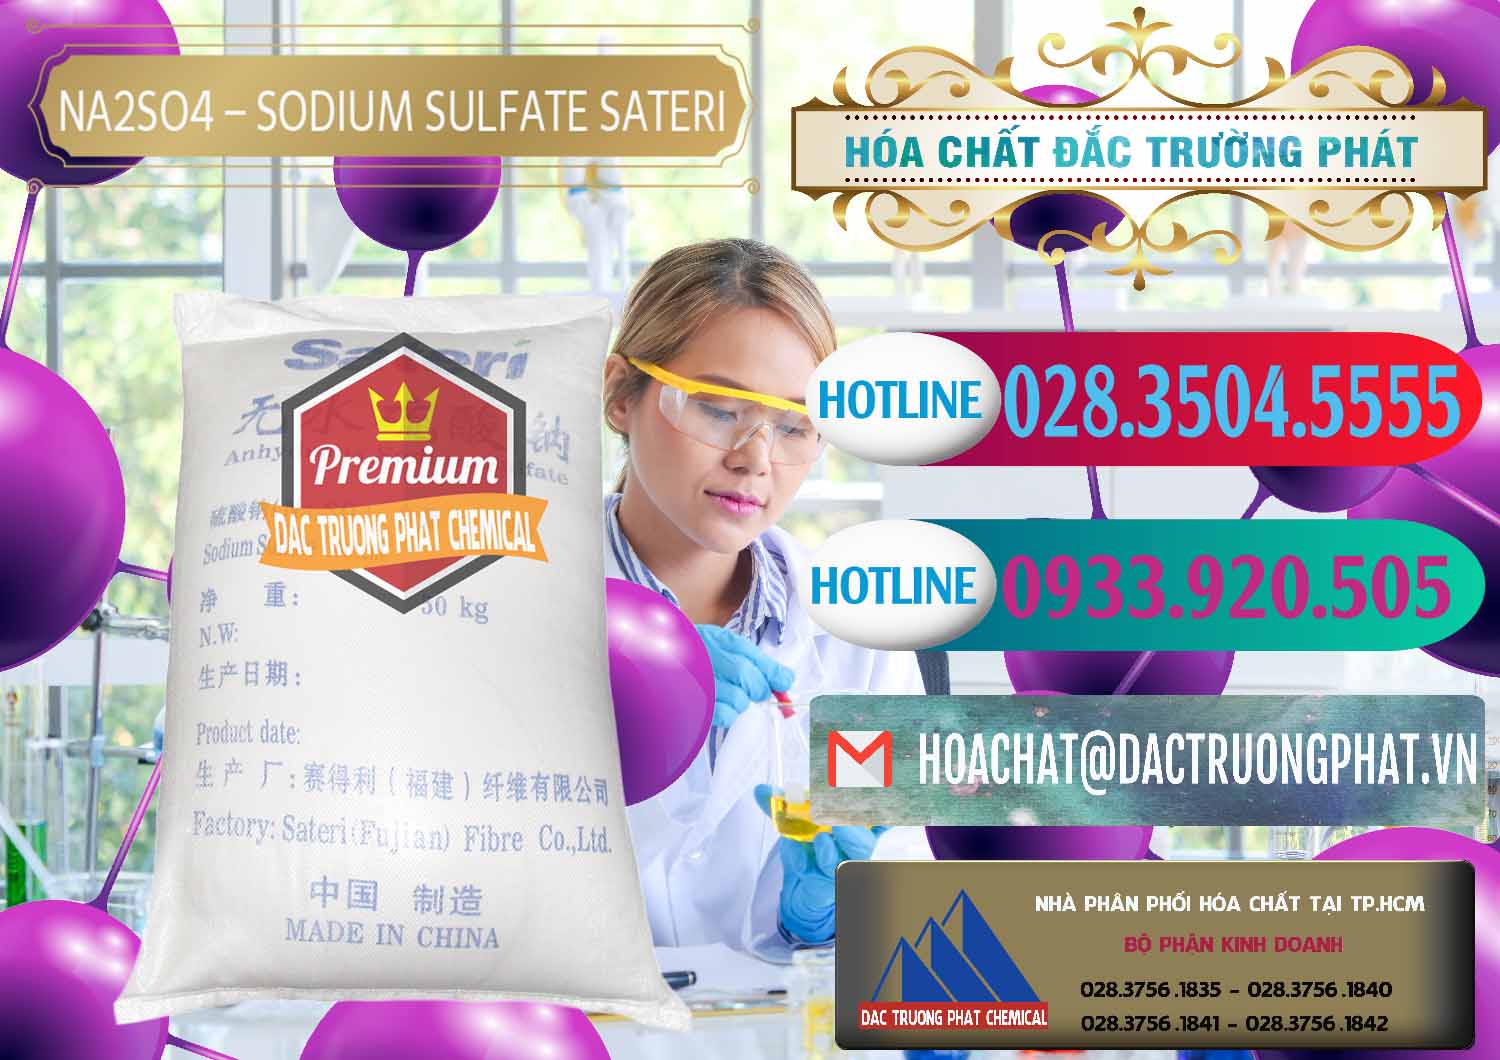 Cty bán _ cung ứng Sodium Sulphate - Muối Sunfat Na2SO4 Sateri Trung Quốc China - 0100 - Nơi chuyên cung cấp - nhập khẩu hóa chất tại TP.HCM - truongphat.vn